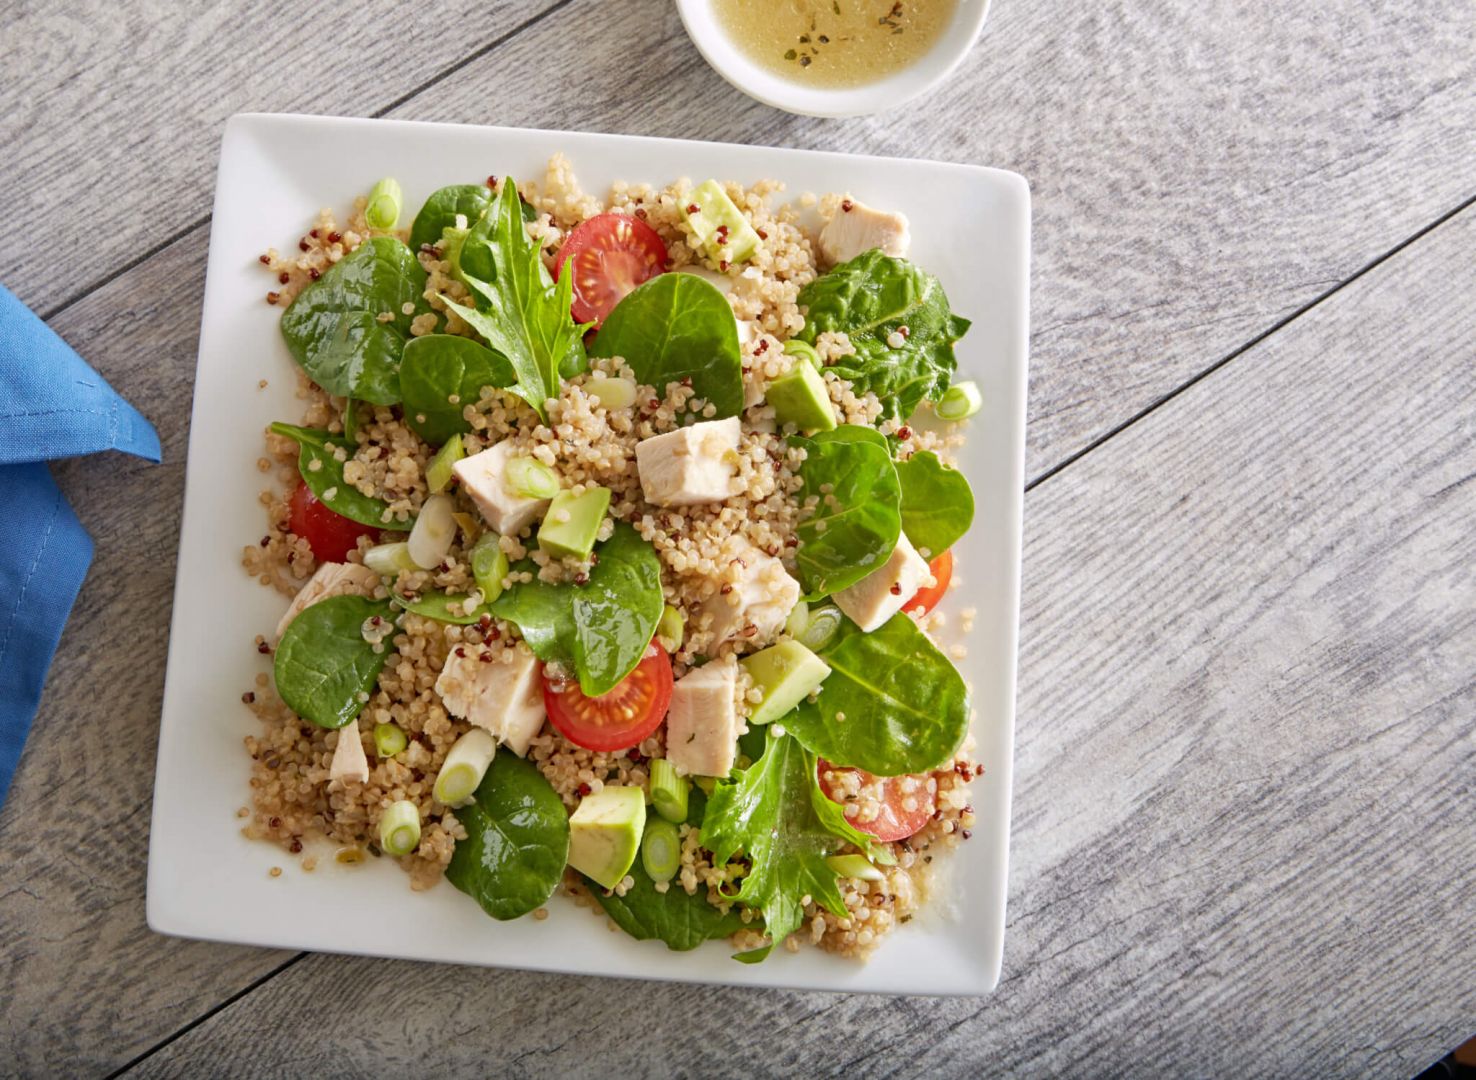 Avocado Chicken Power Salad with quinoa